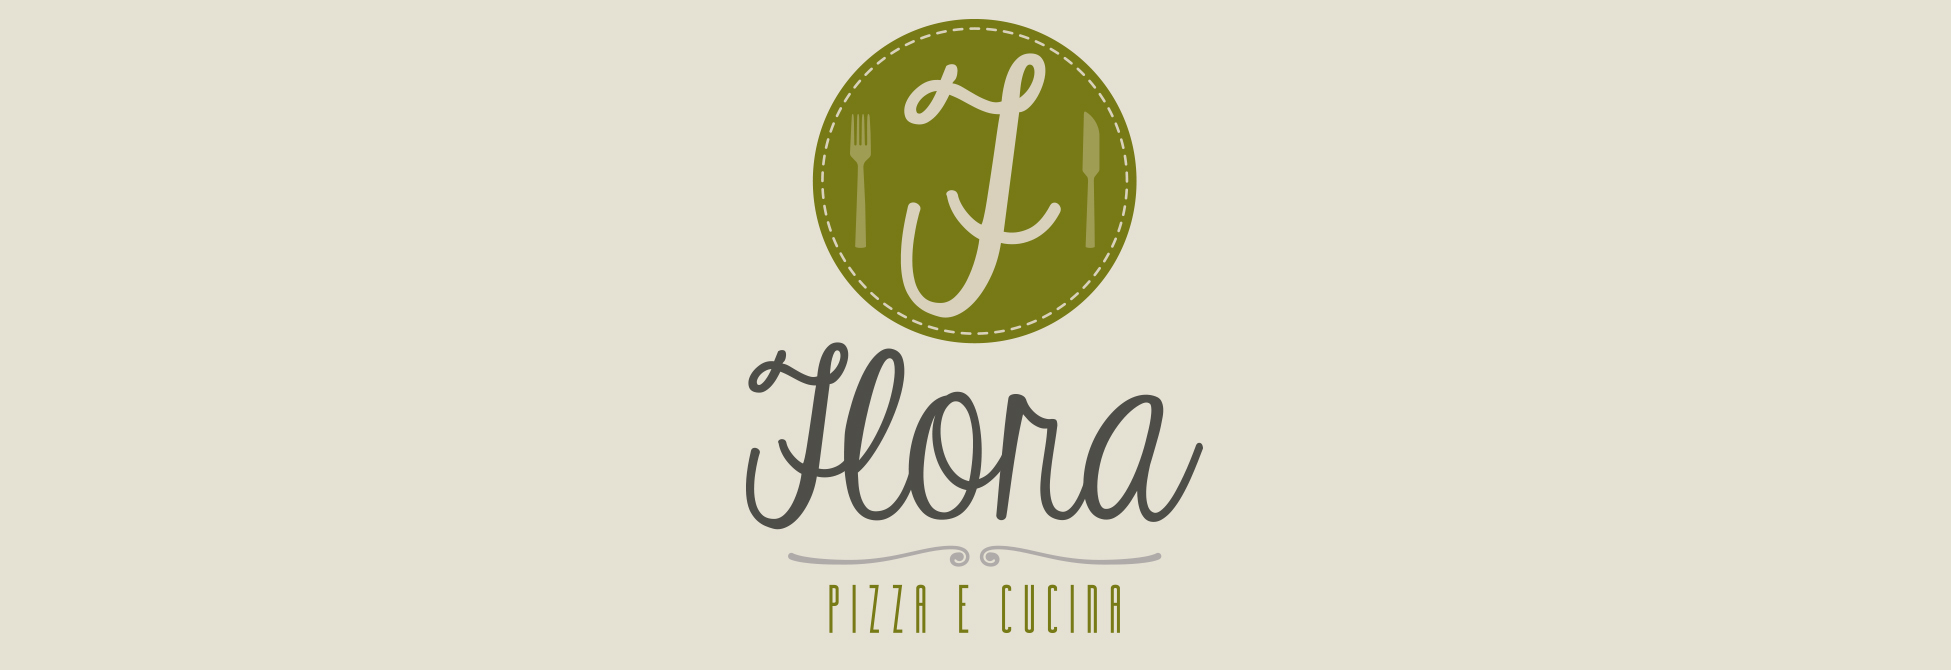 Flora pizza e cucina